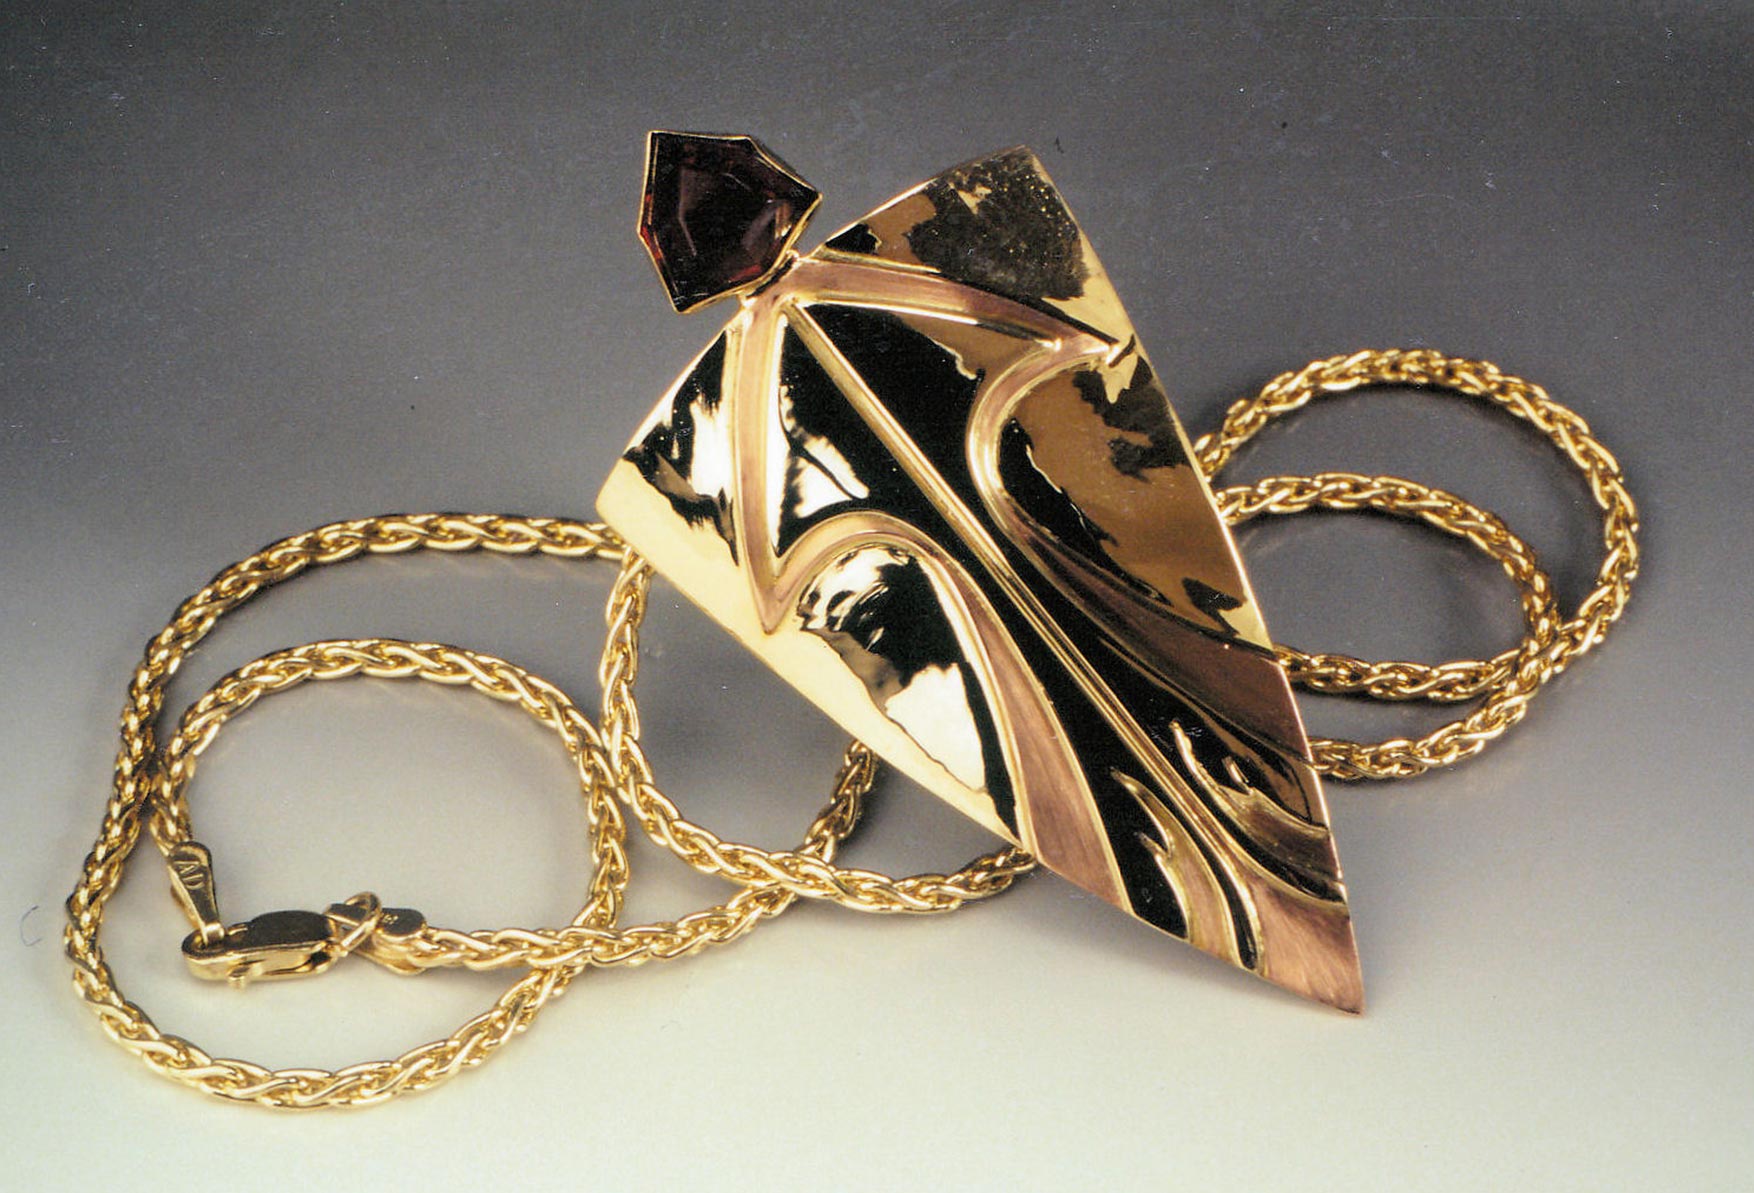 Firebird gold pendant